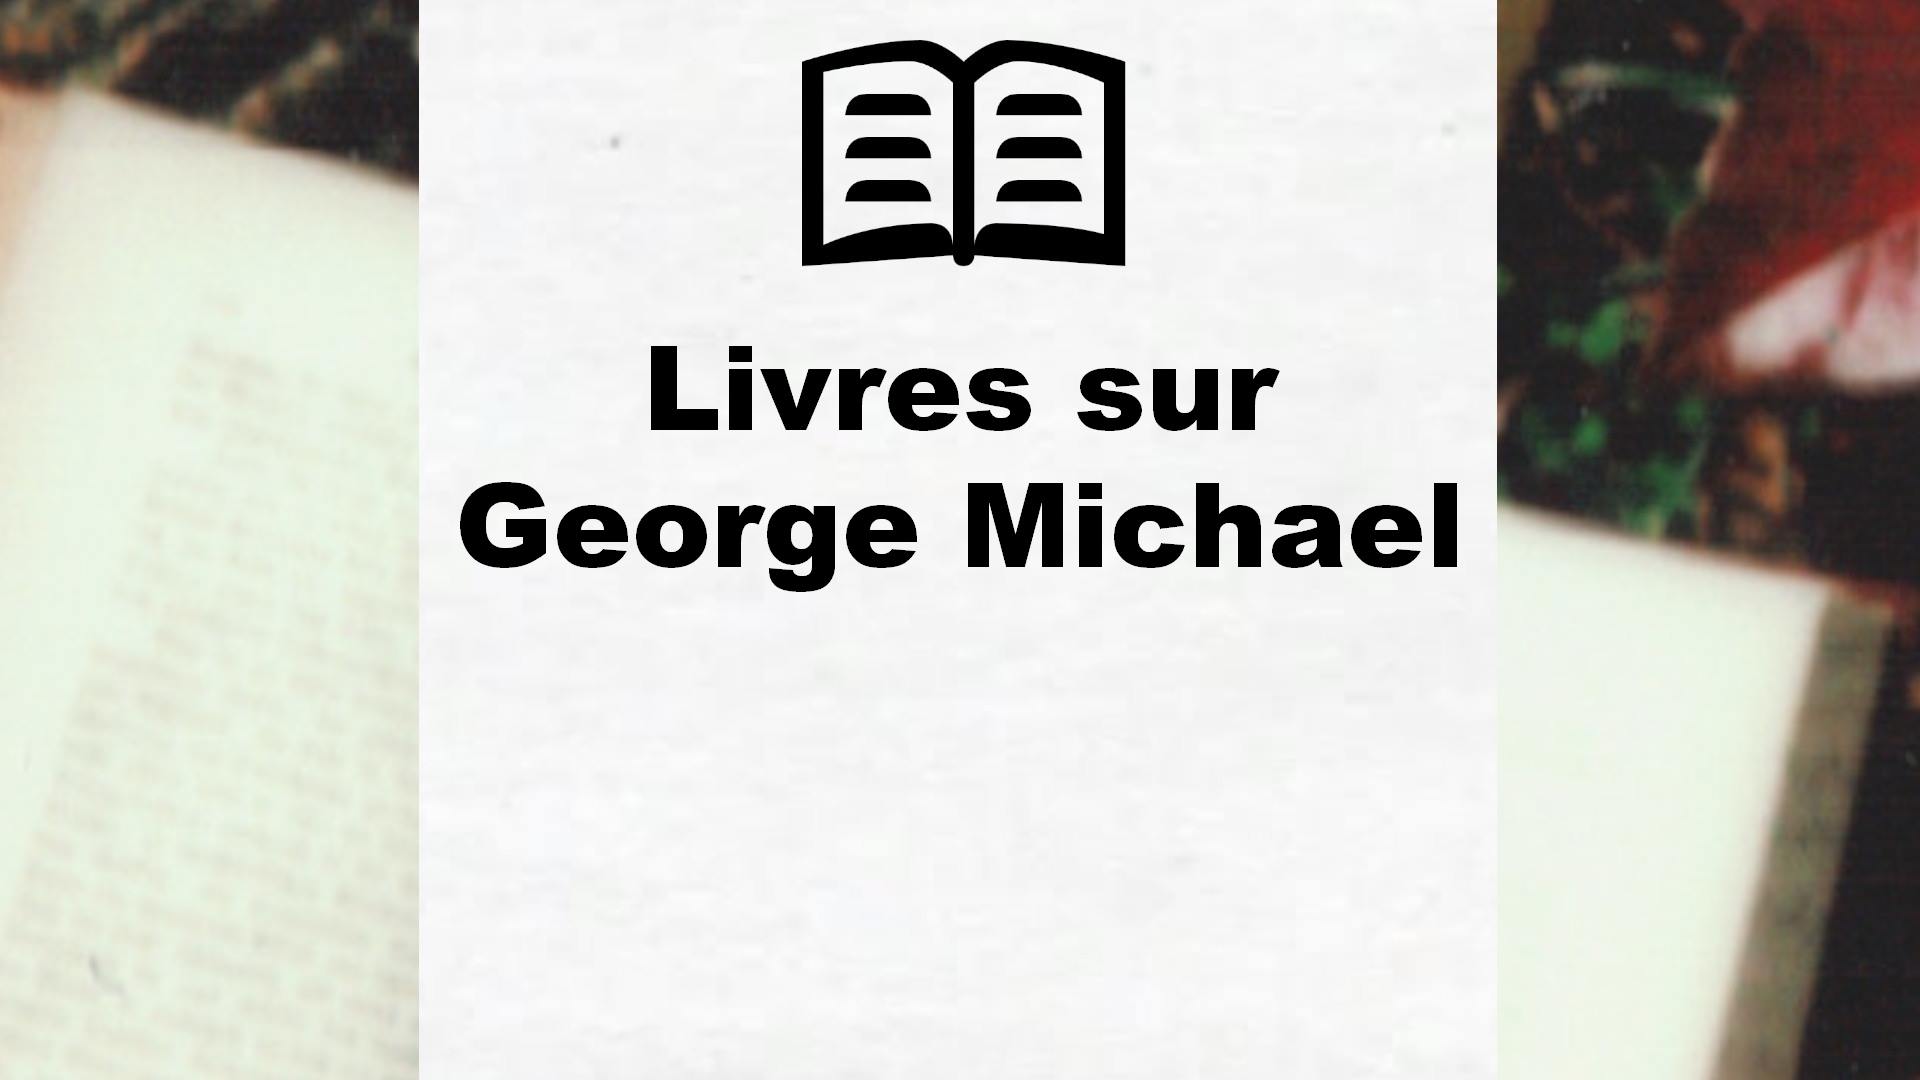 Livres sur George Michael